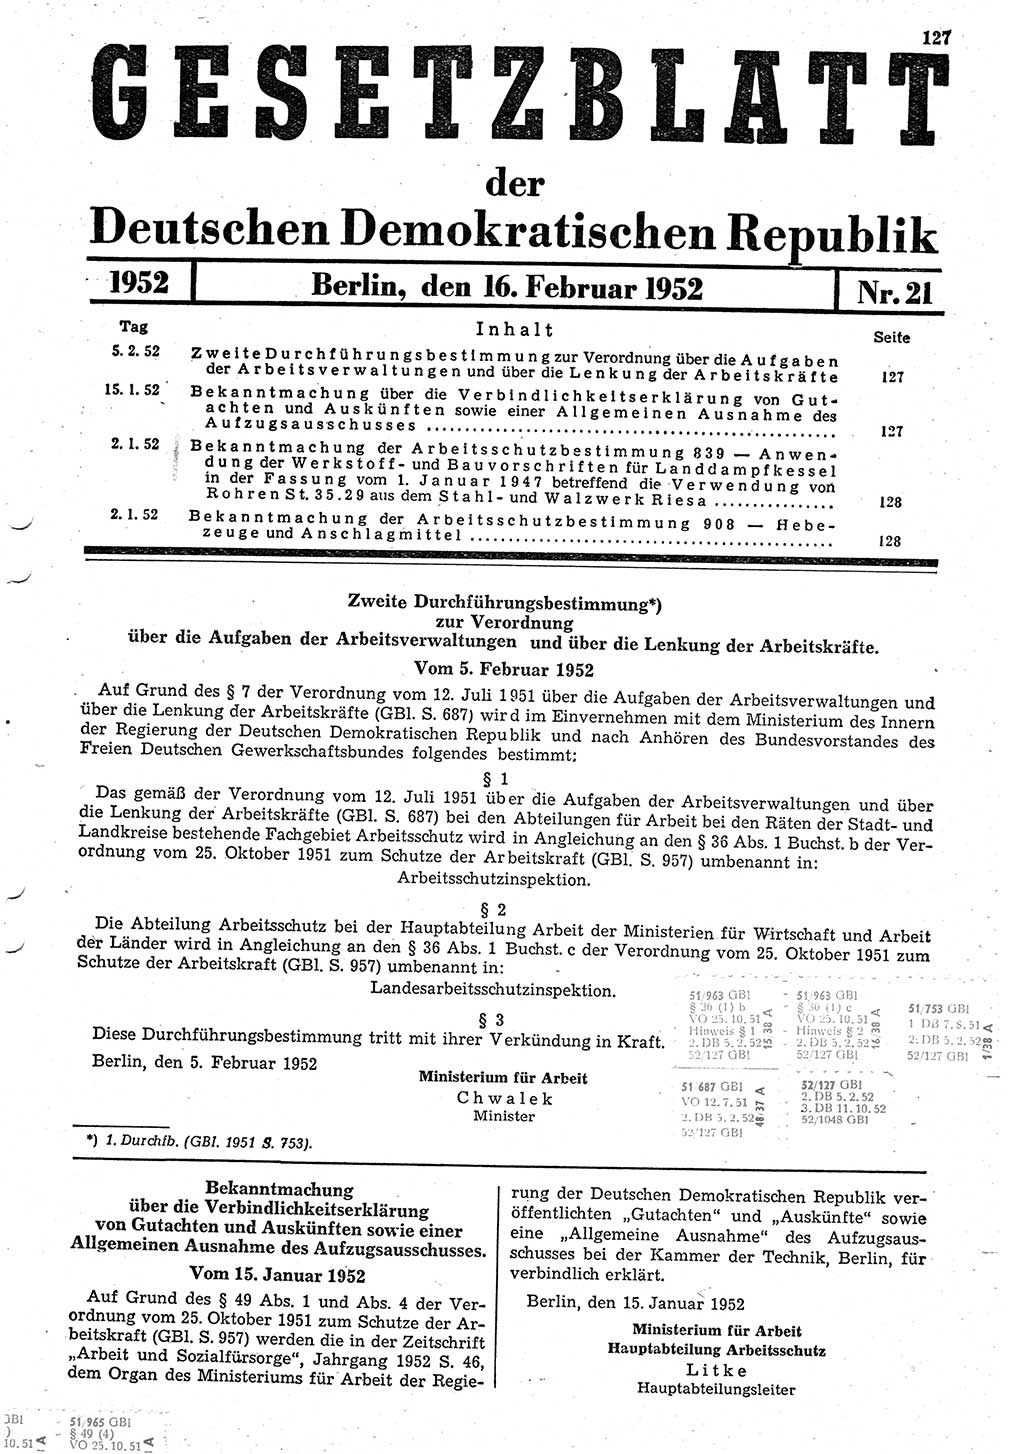 Gesetzblatt (GBl.) der Deutschen Demokratischen Republik (DDR) 1952, Seite 127 (GBl. DDR 1952, S. 127)